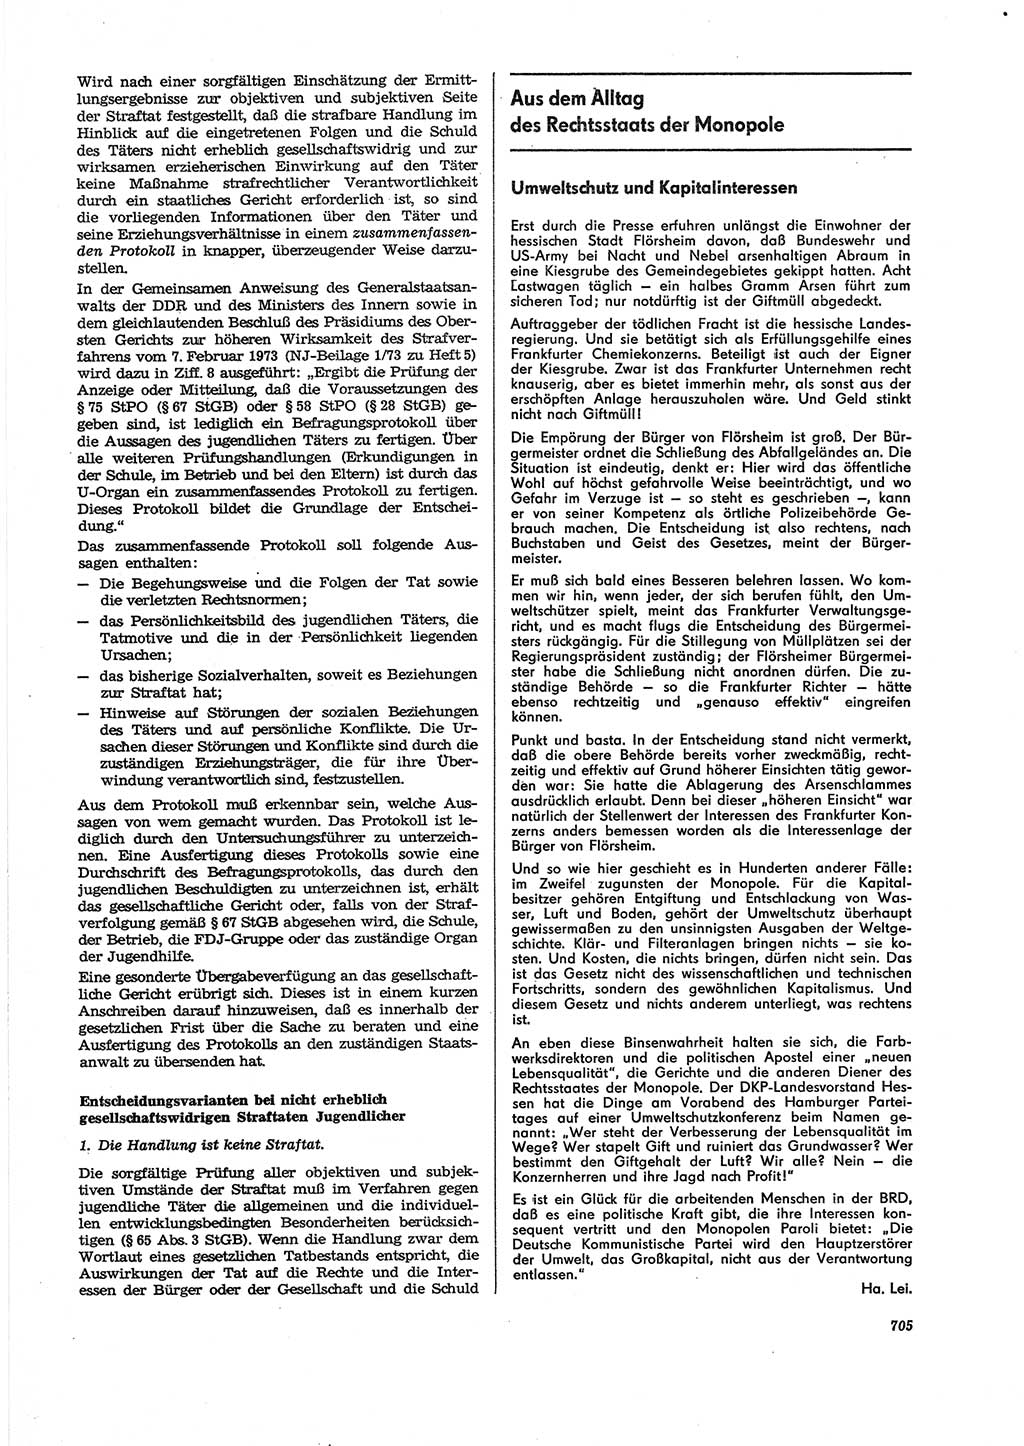 Neue Justiz (NJ), Zeitschrift für Recht und Rechtswissenschaft [Deutsche Demokratische Republik (DDR)], 27. Jahrgang 1973, Seite 705 (NJ DDR 1973, S. 705)